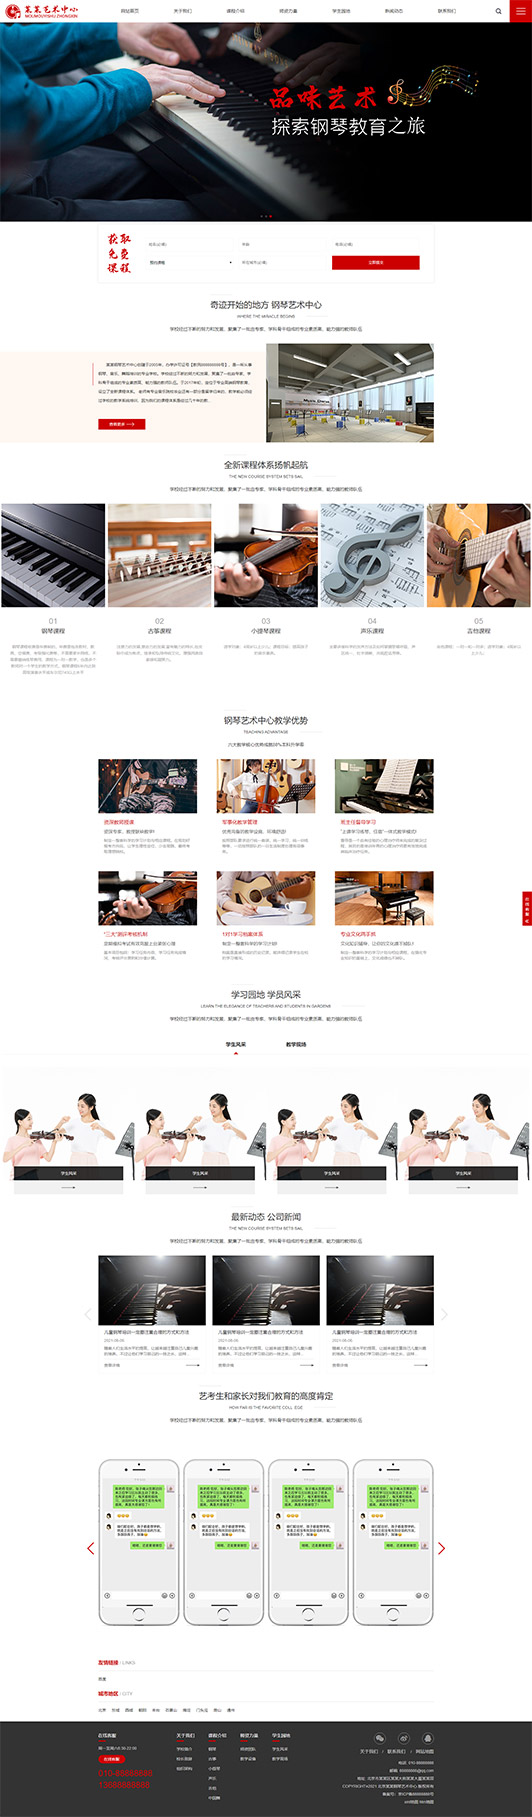 内江钢琴艺术培训公司响应式企业网站